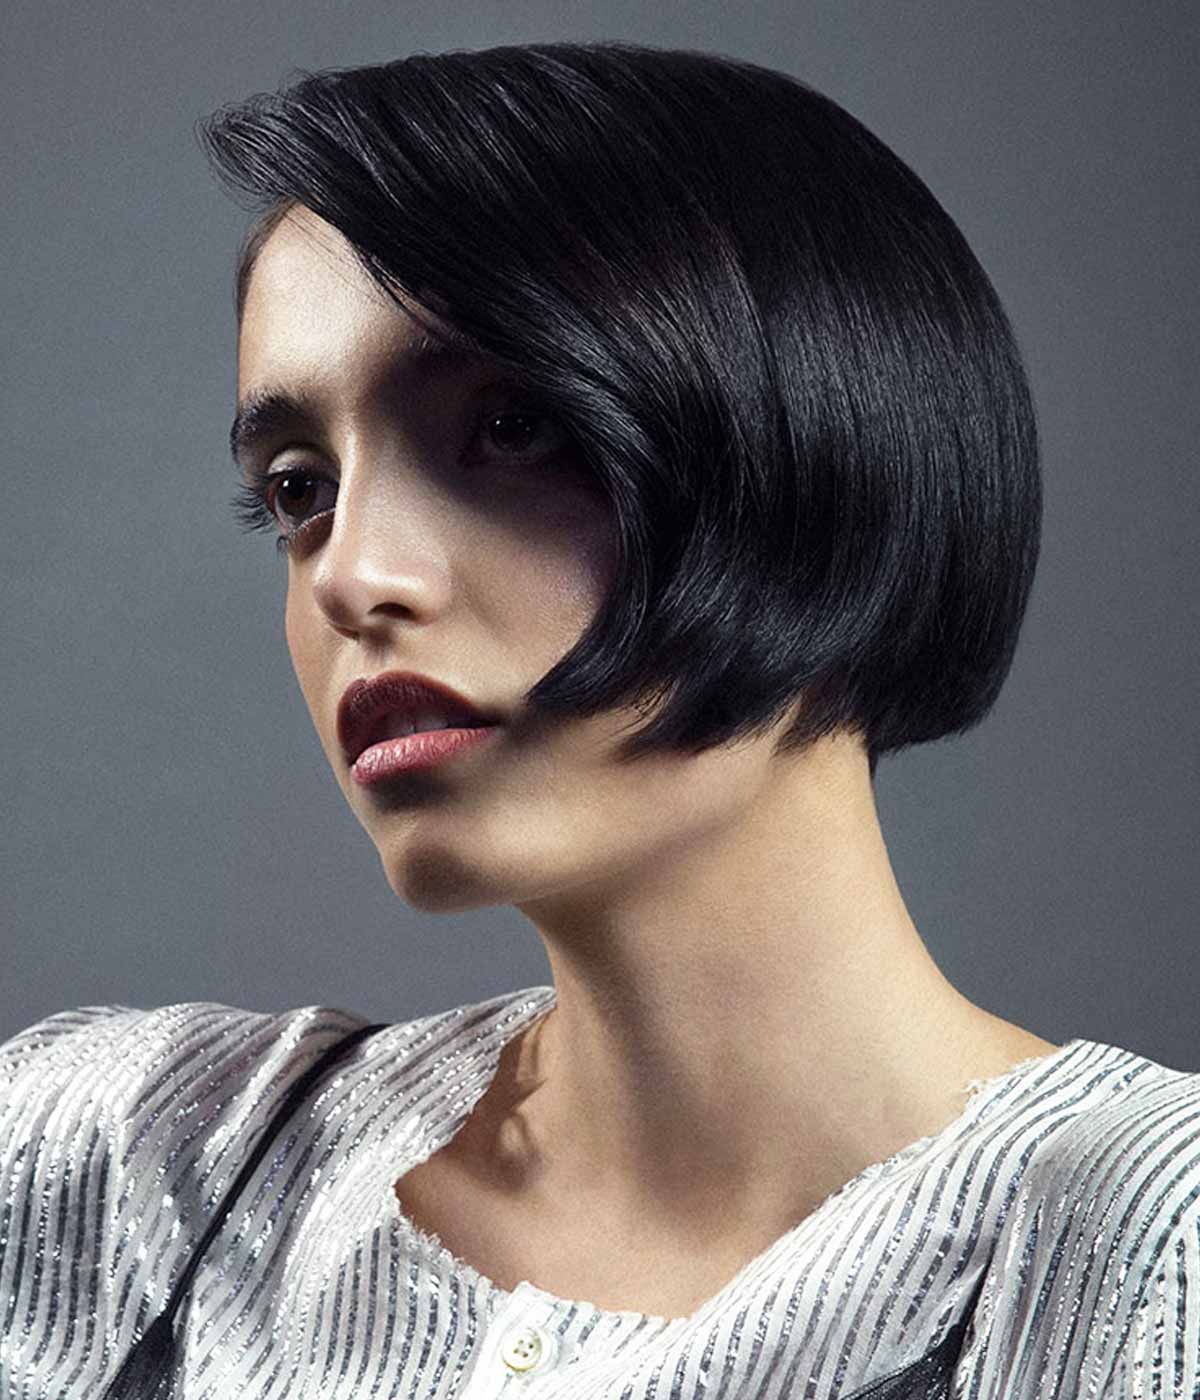 James Hair Fashion Club collezione tagli capelli 2023 2024 autunno inverno 